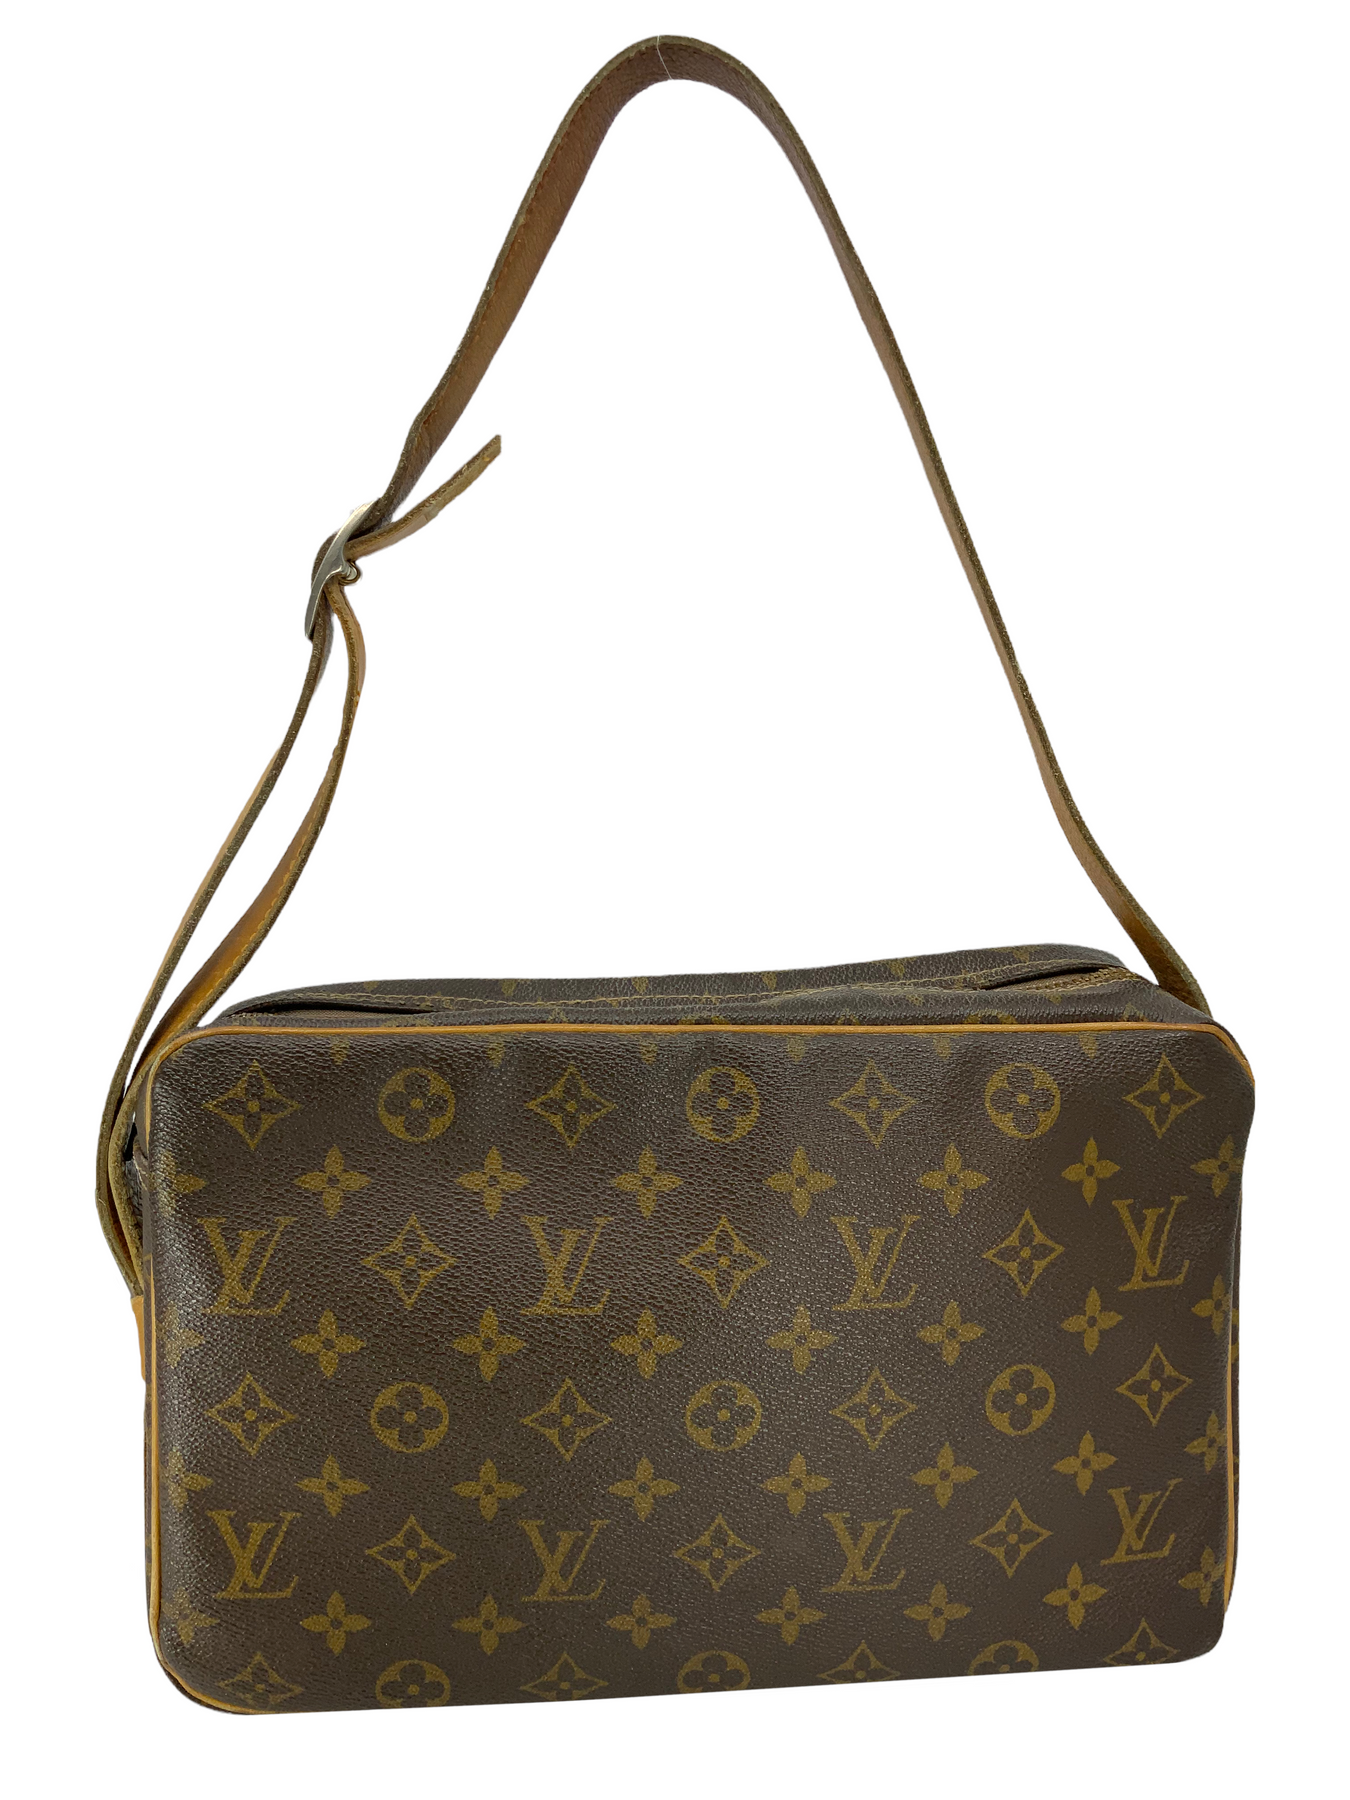 Louis Vuitton, Bags, Louis Vuitton Authentic Vintage Monogram Sac  Bandouliere